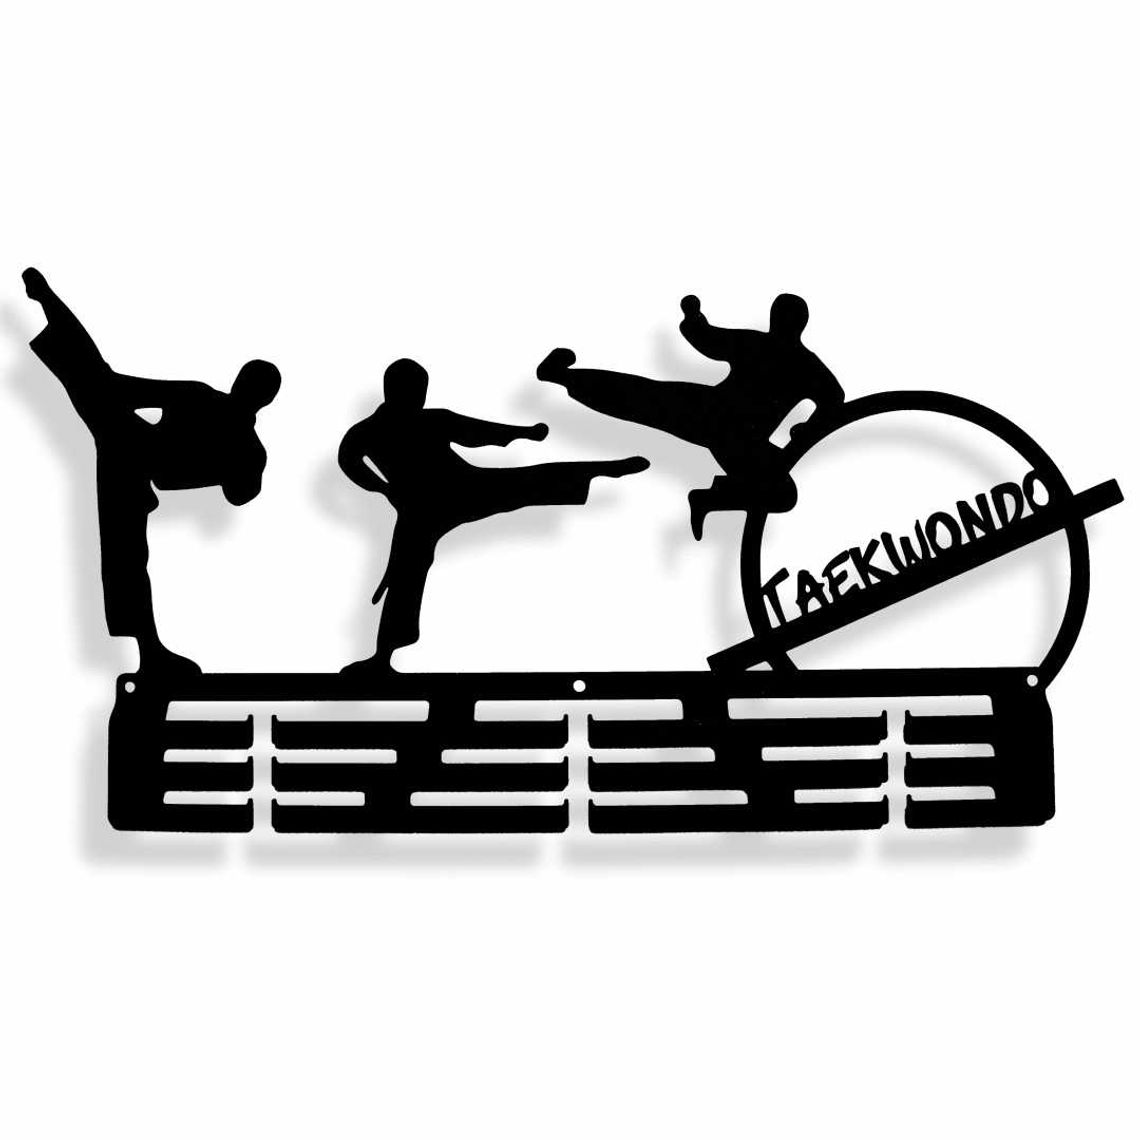 Sekcja Taekwondo